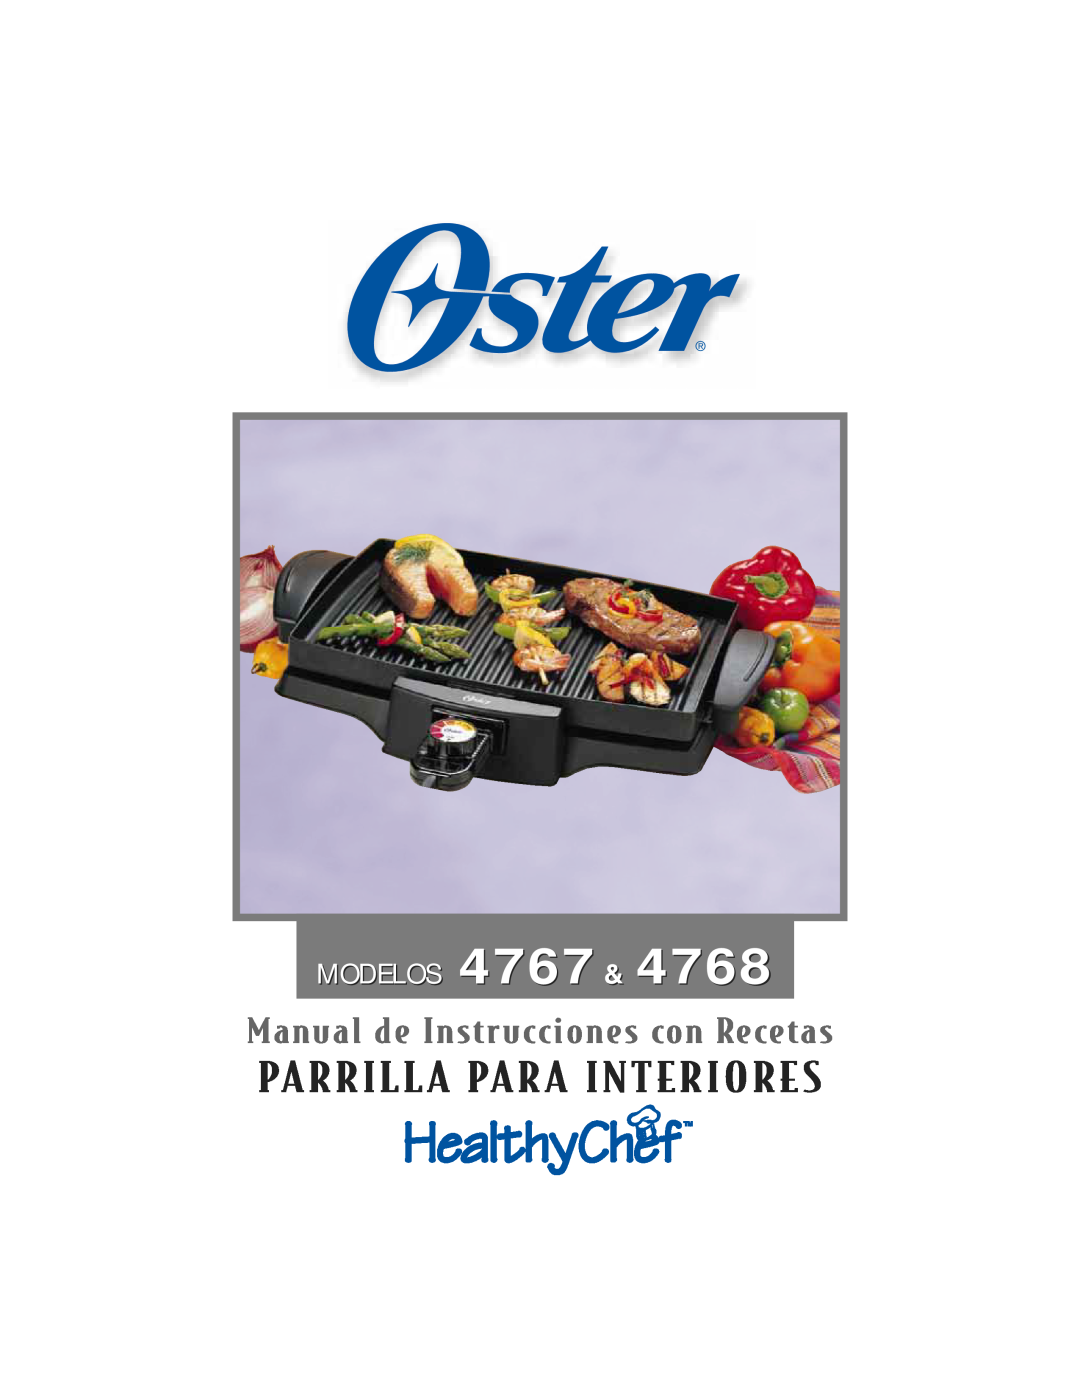 Oster 4768 owner manual MODELOS 4767, Parrilla Para Interiores, Manual de Instrucciones con Recetas 